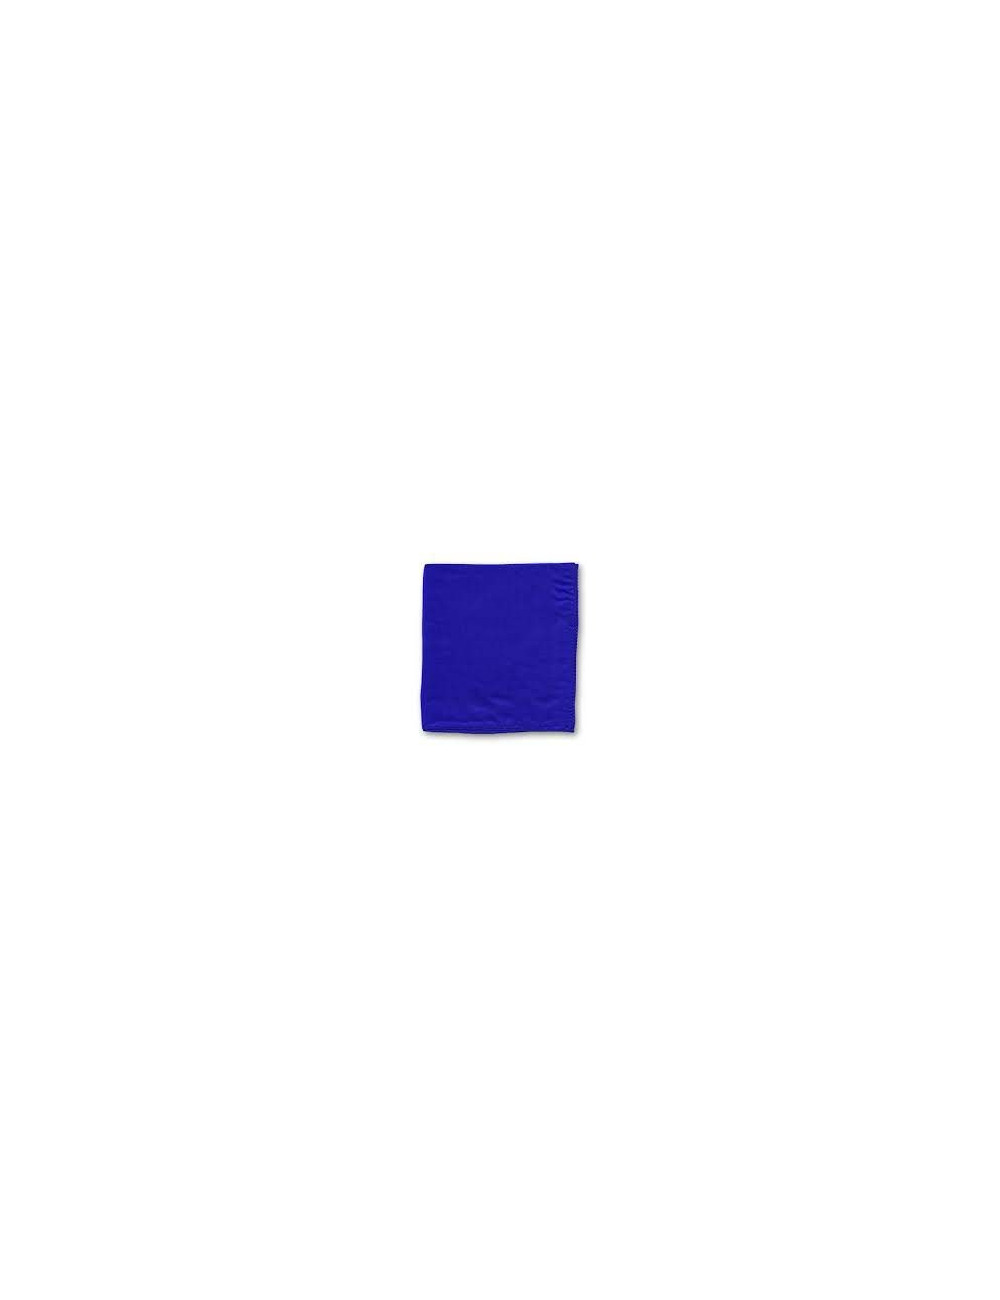 Foulard bleu de taille 45x45 cm